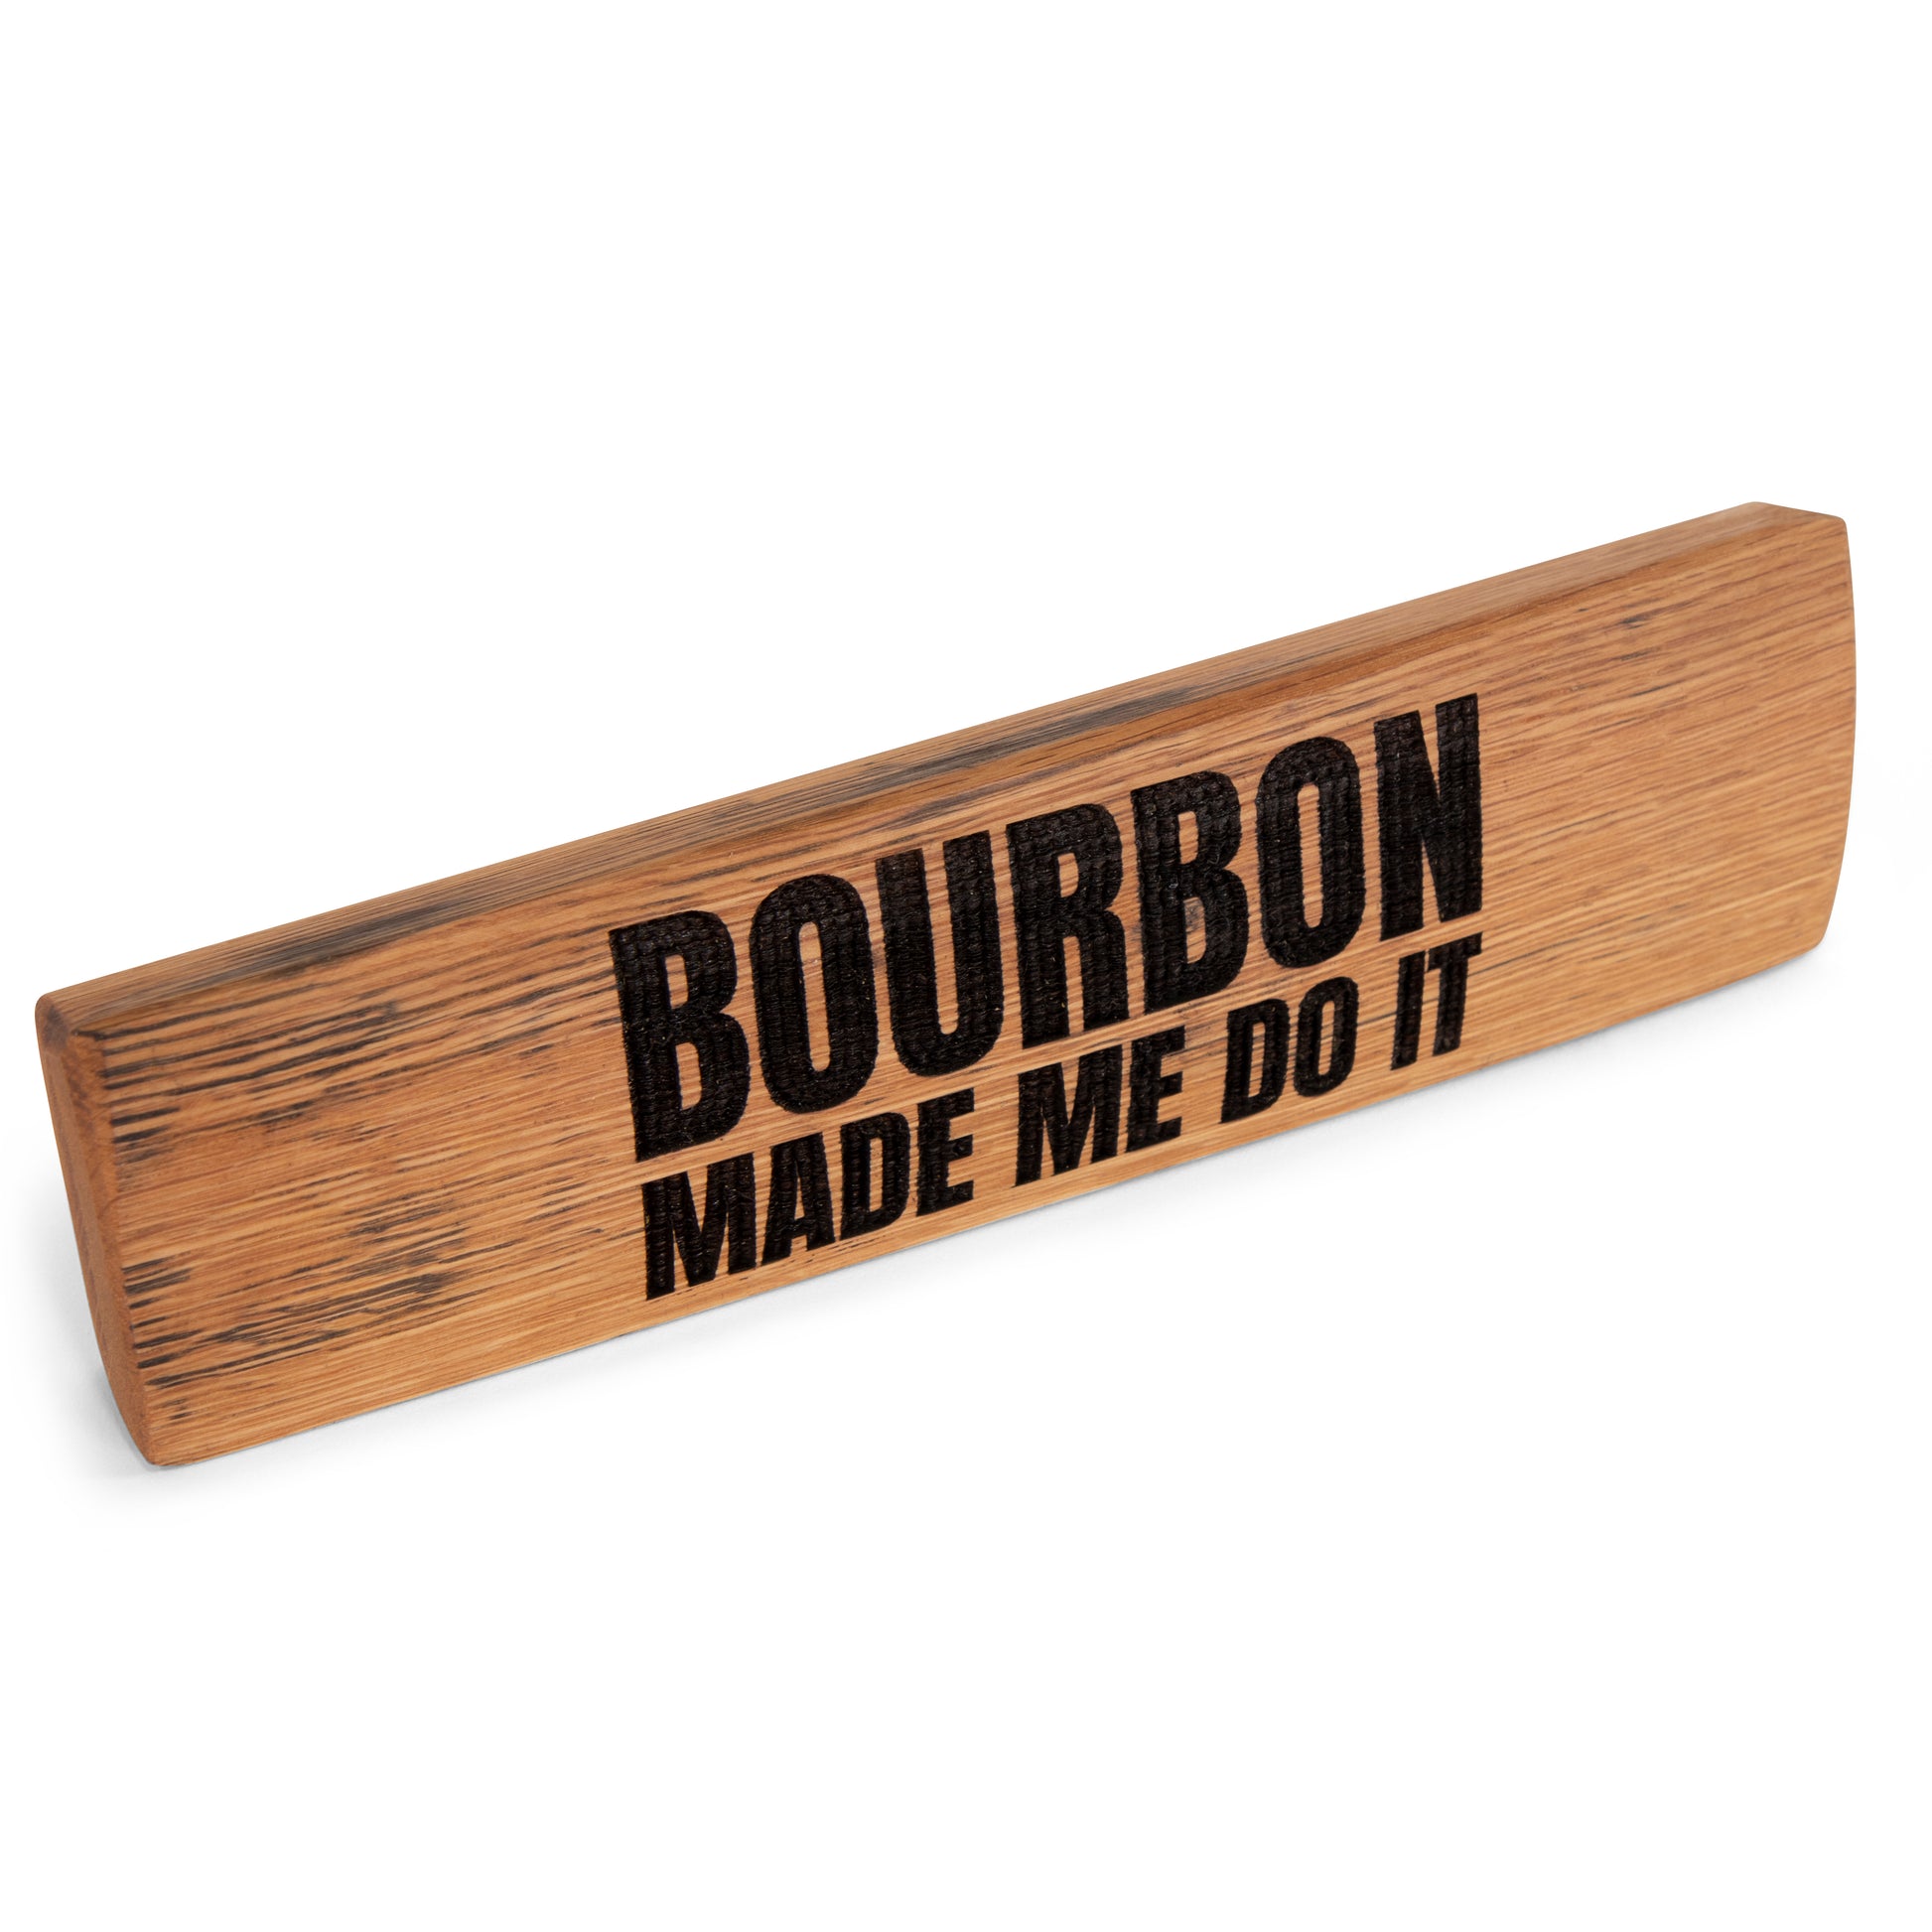 Bourbon Made Me Do It Barrel Oak Wood Sign - Motor City Barrels